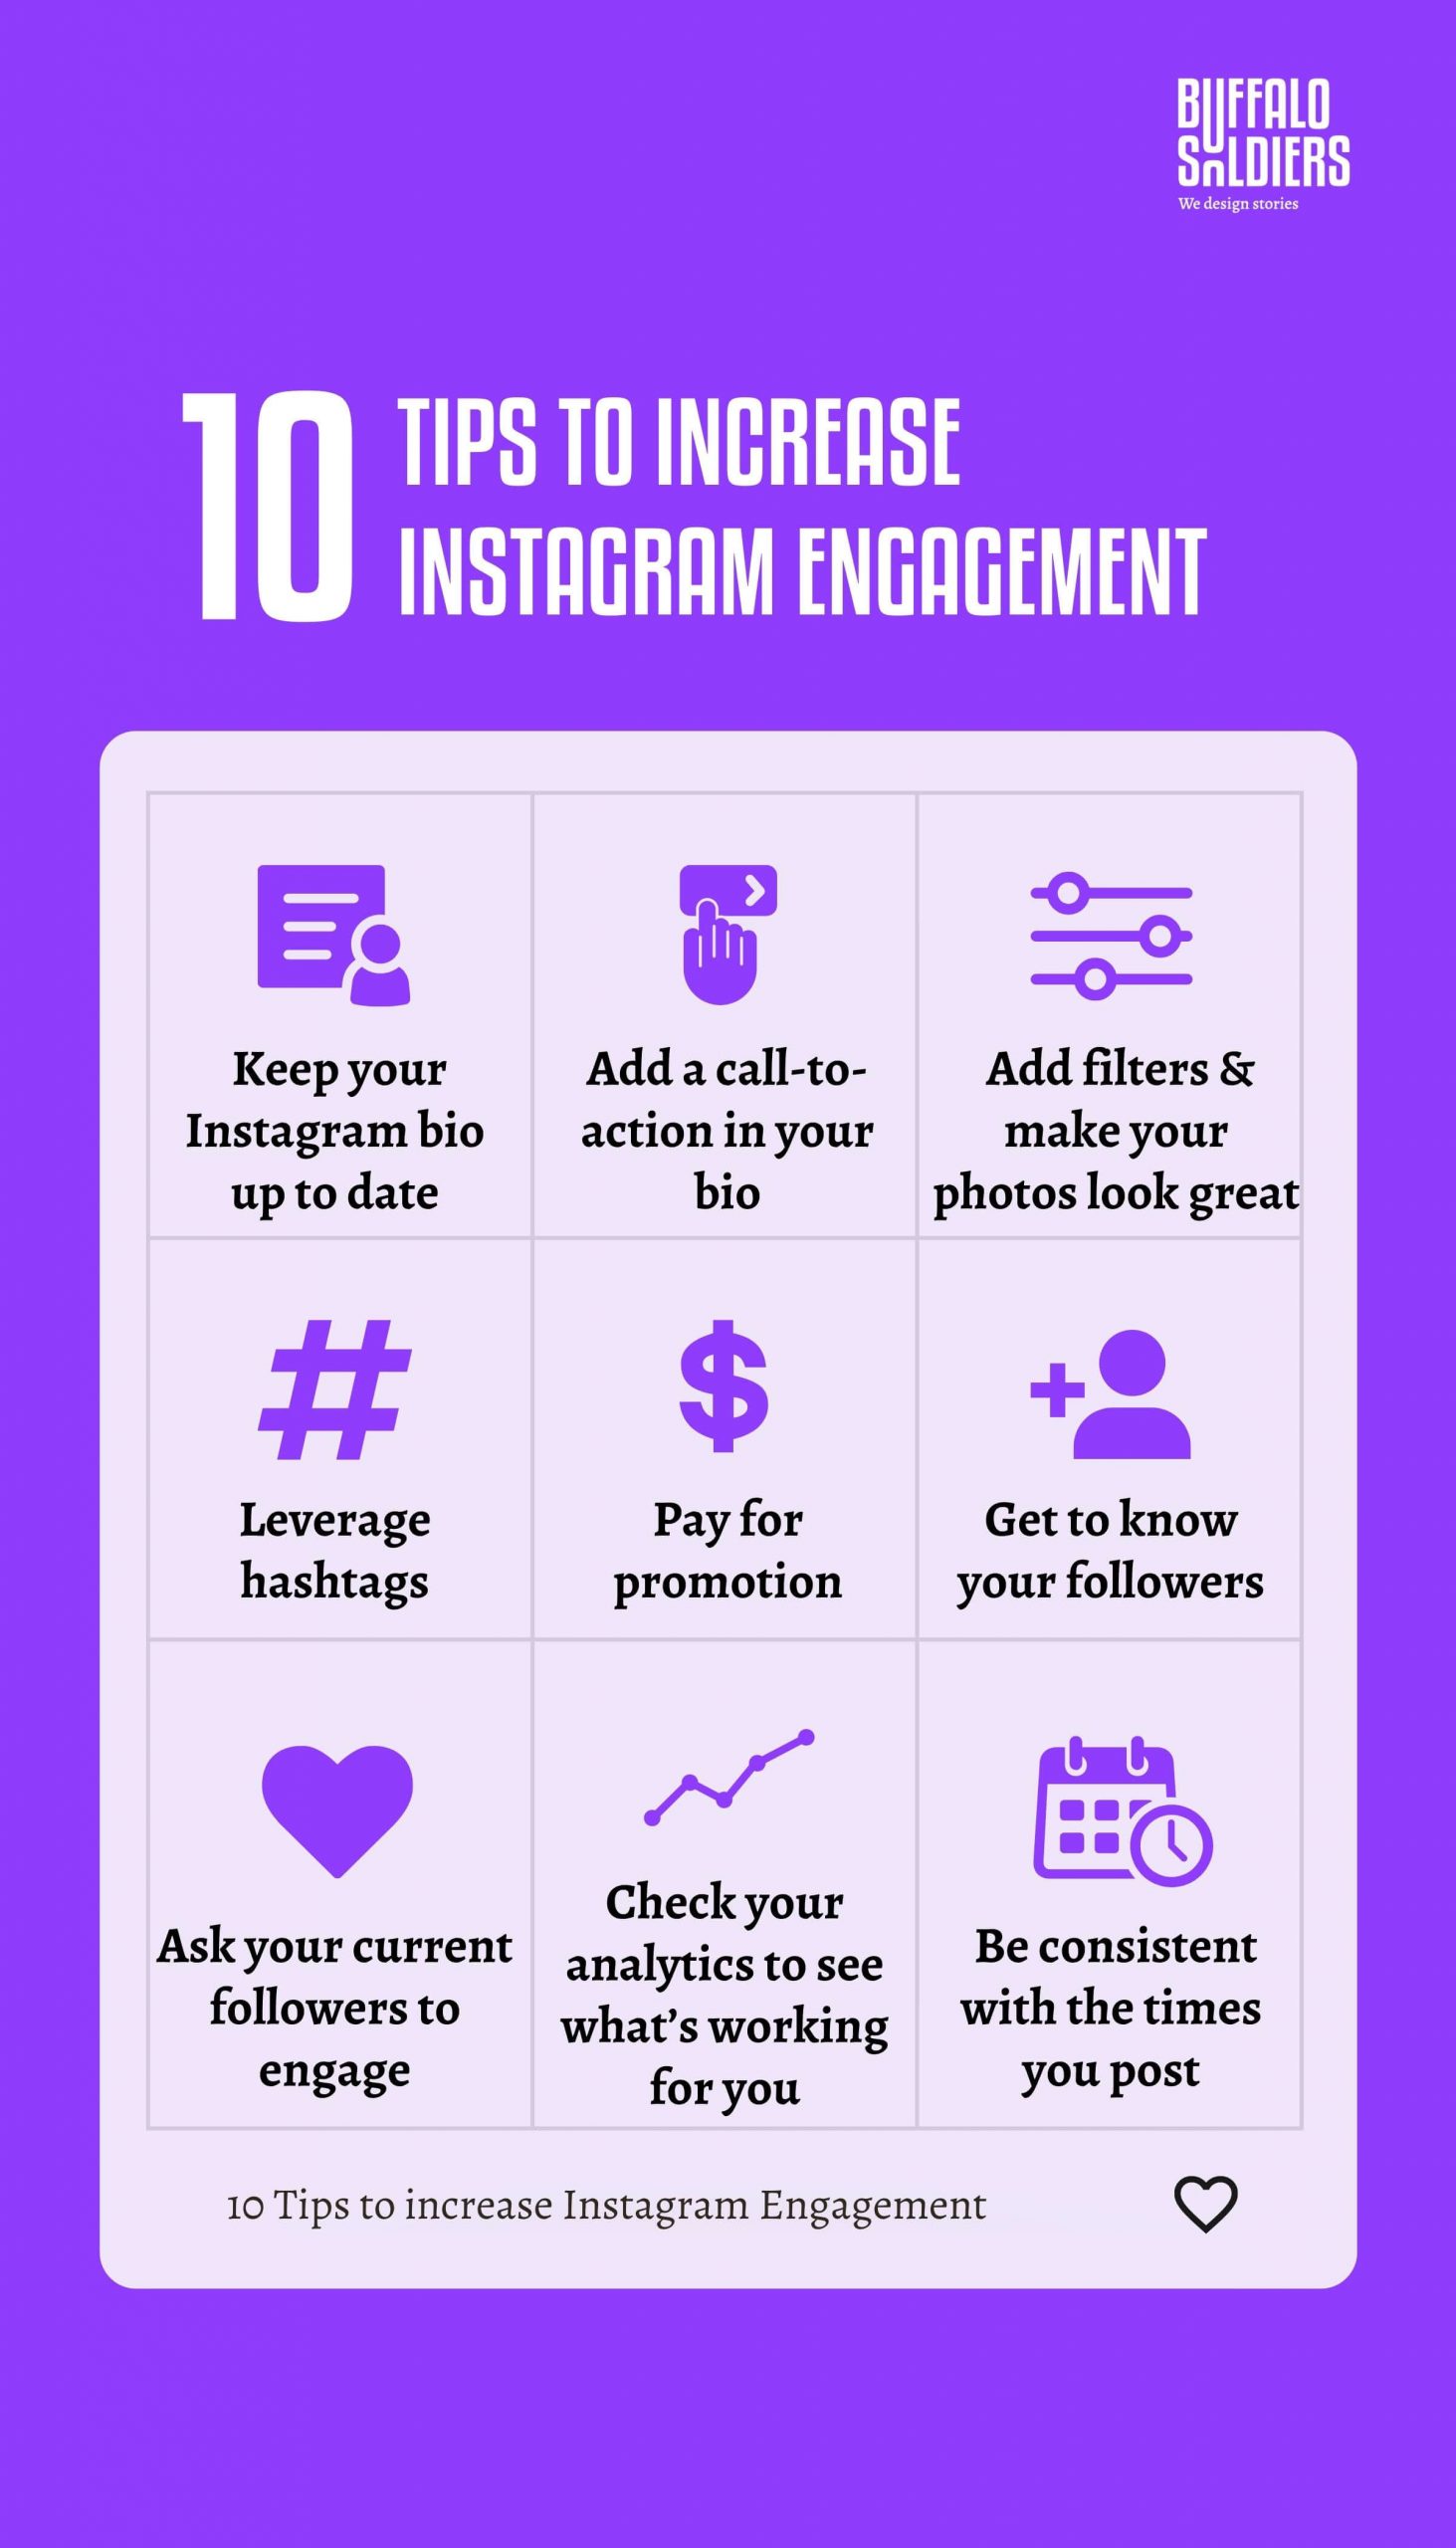 10 dicas para aumentar o engajamento no Instagram